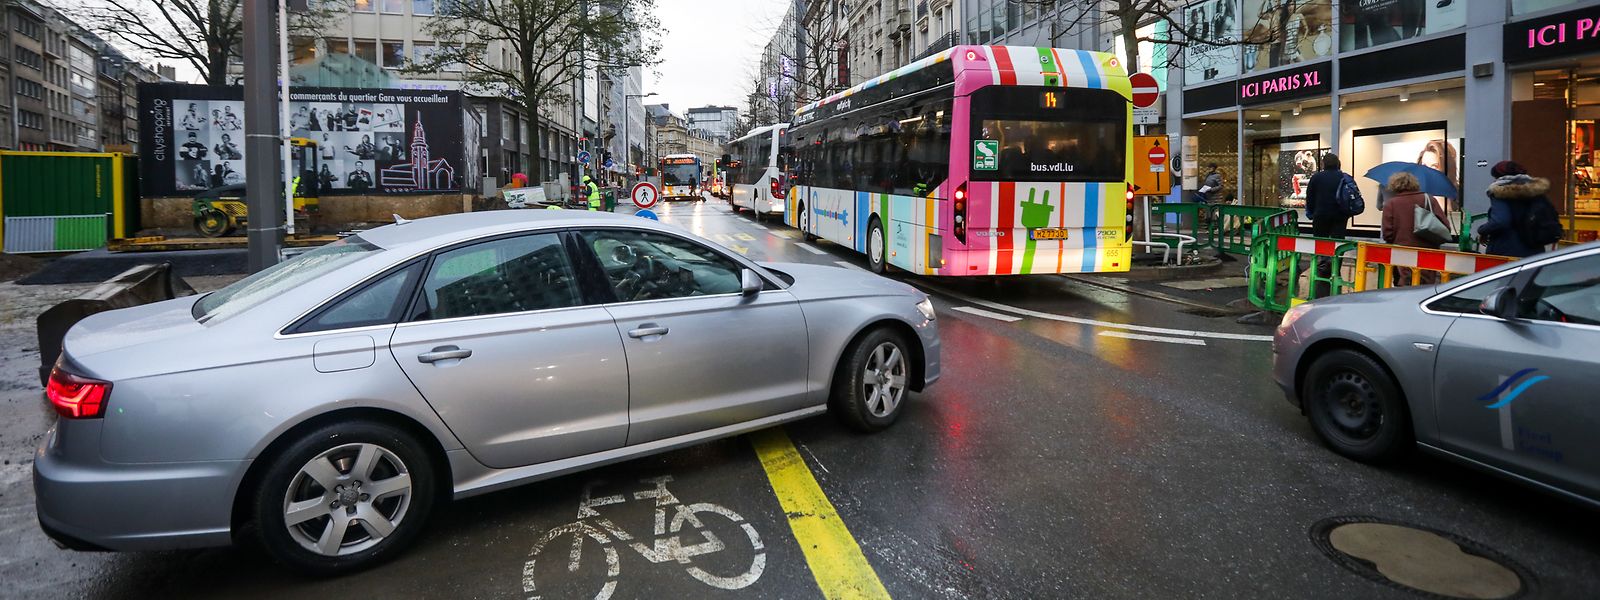 Au classement des villes embouteillées, Luxembourg fait pire que Paris, Bruxelles ou Londres.